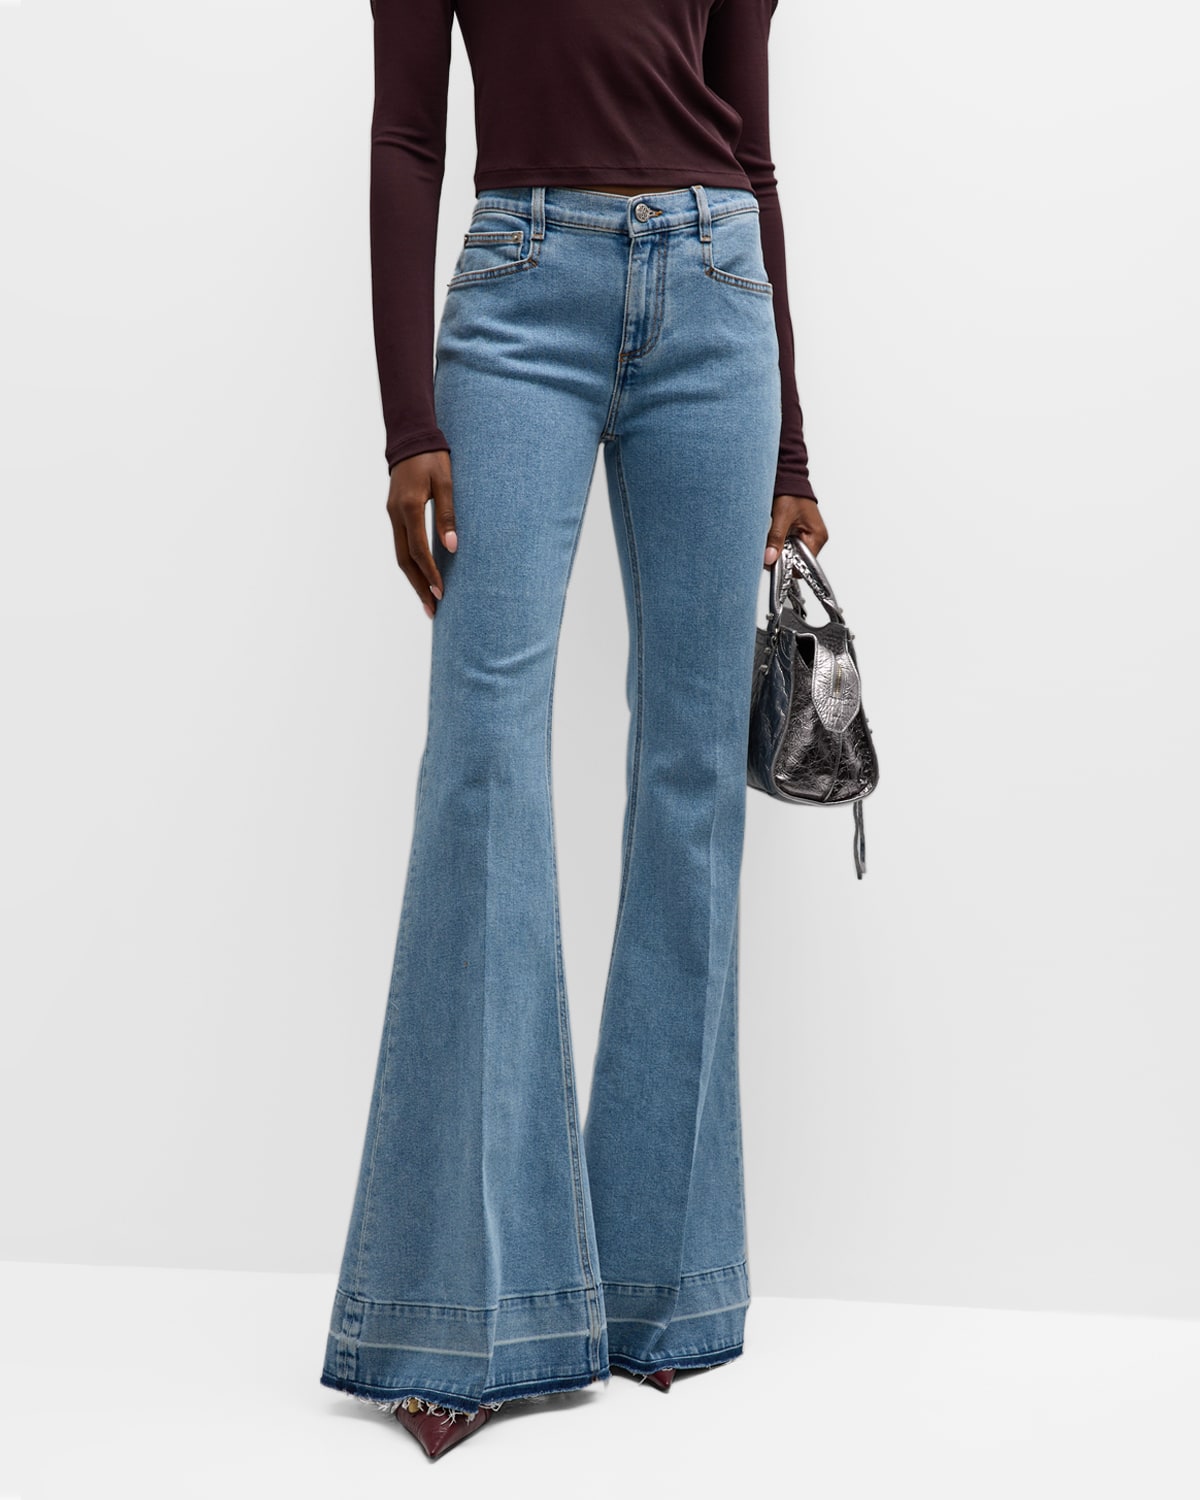 Designer Jeans Women | Marcus